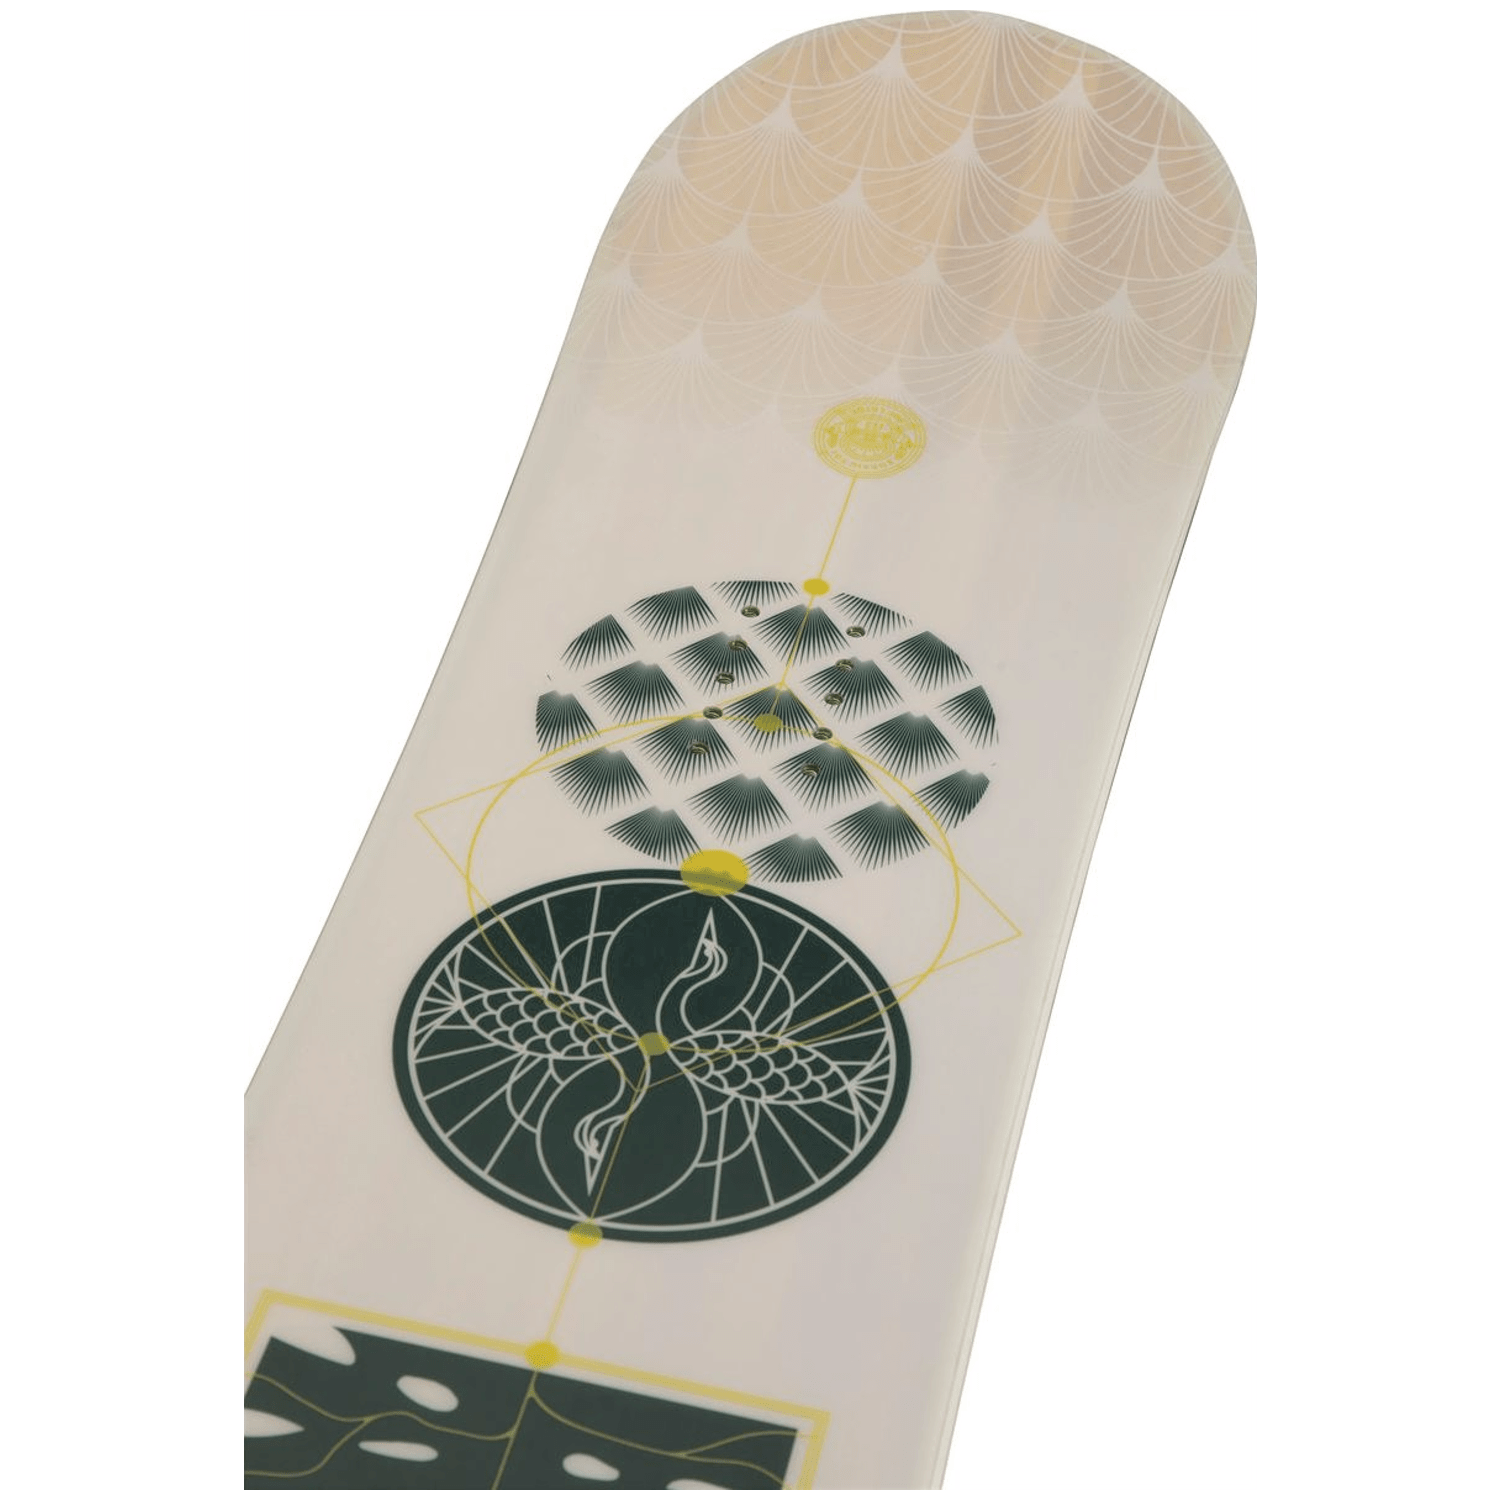 Rossignol Soulside Damen Snowboard